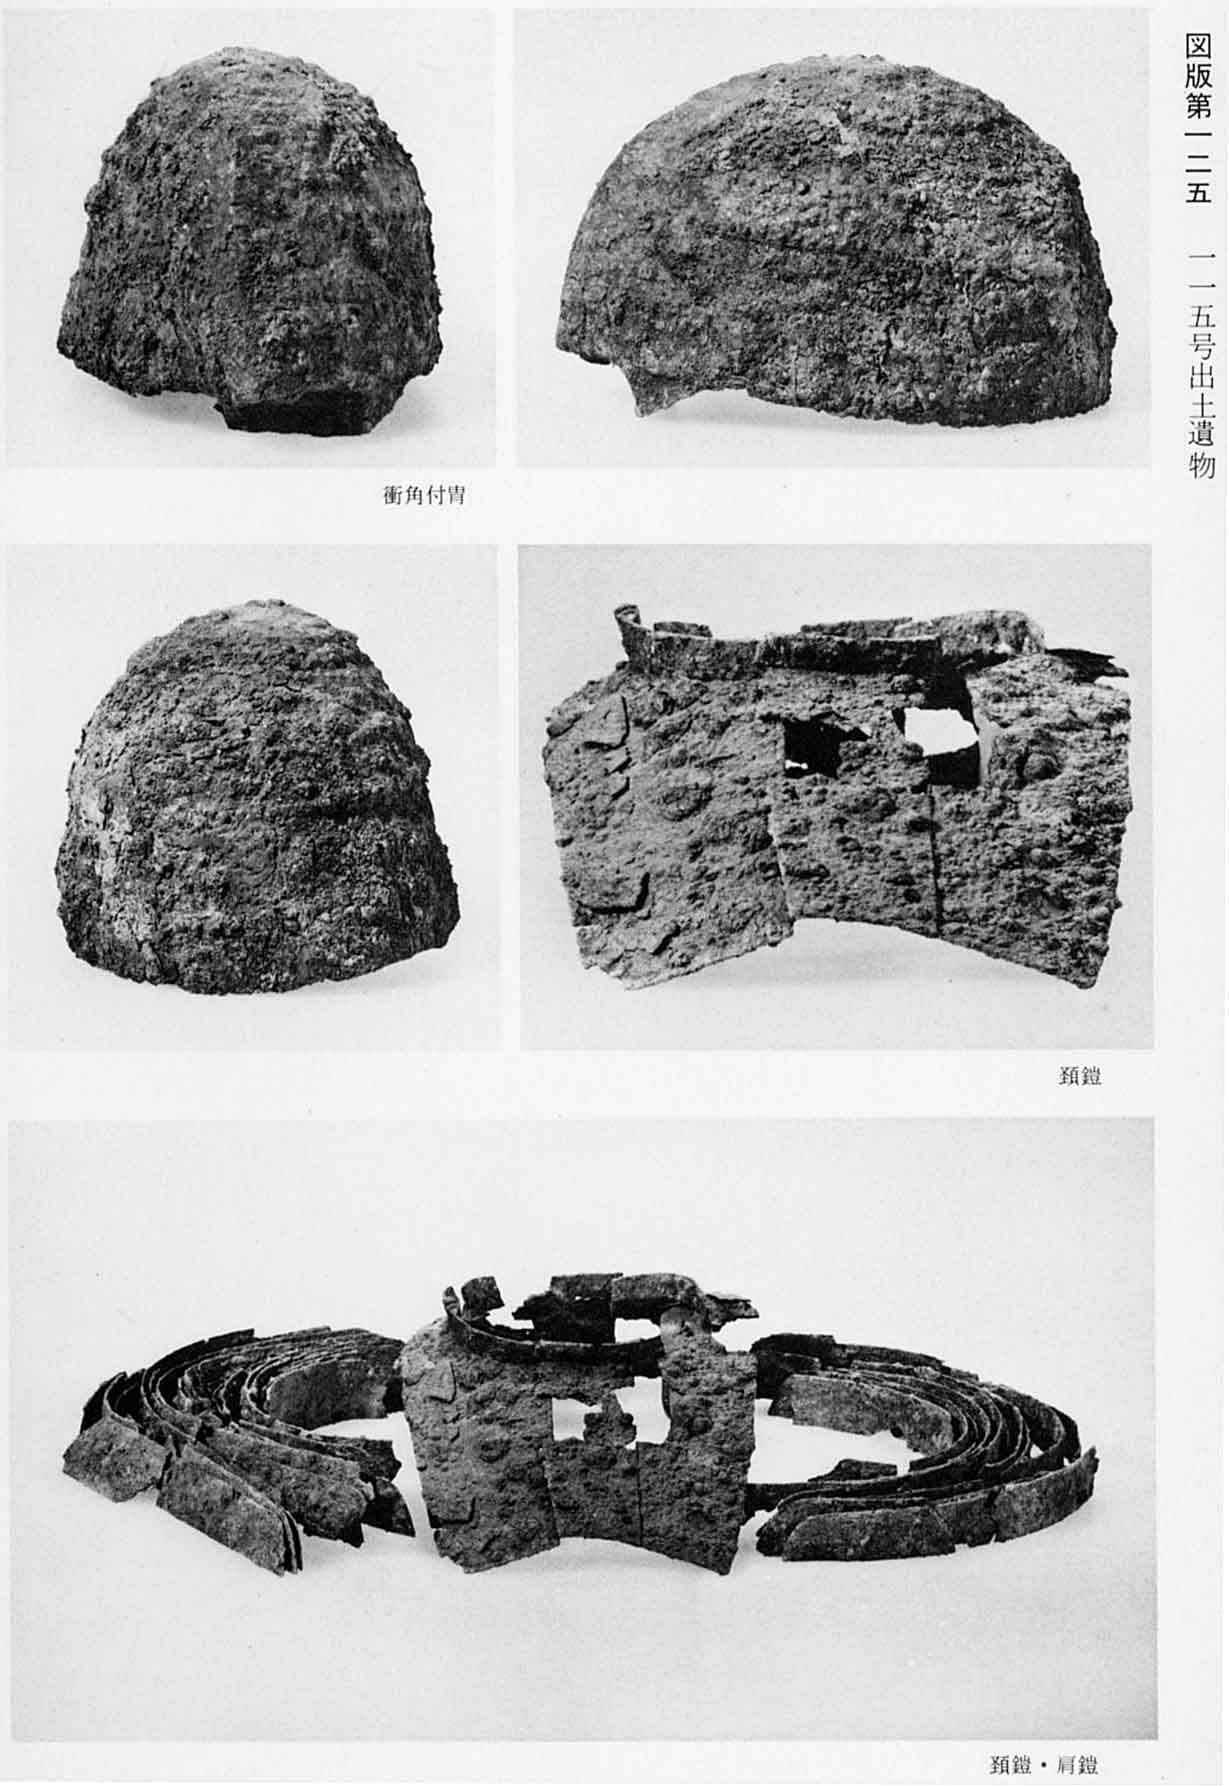 古墳時代の兜が3種類、鎧と、鎧と肩につける鎧がそれぞれ5枚撮影されている、図版125 115号出土遺物のモノクロ写真